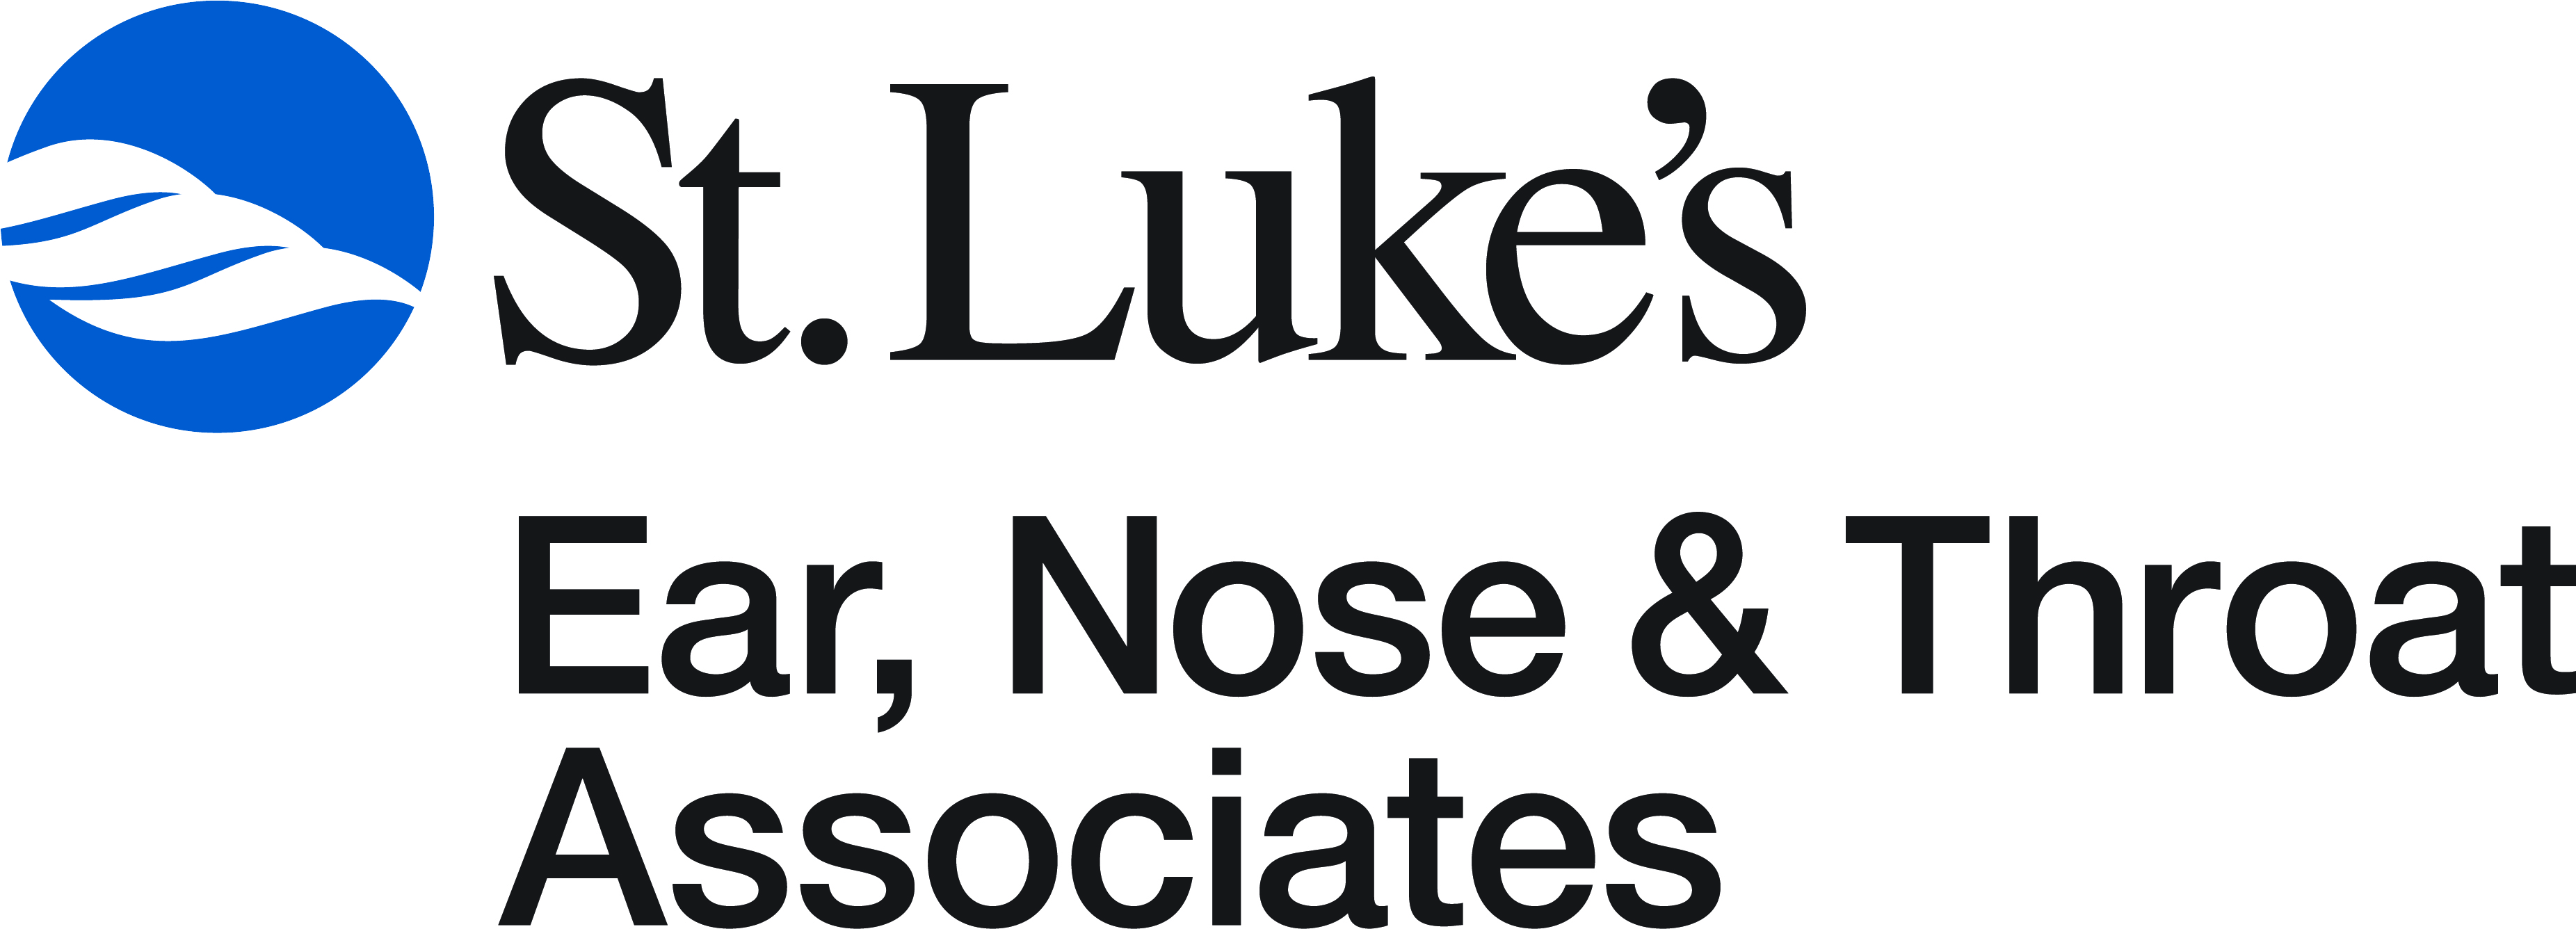 St. Luke's Ear, Nose & Throat Associates